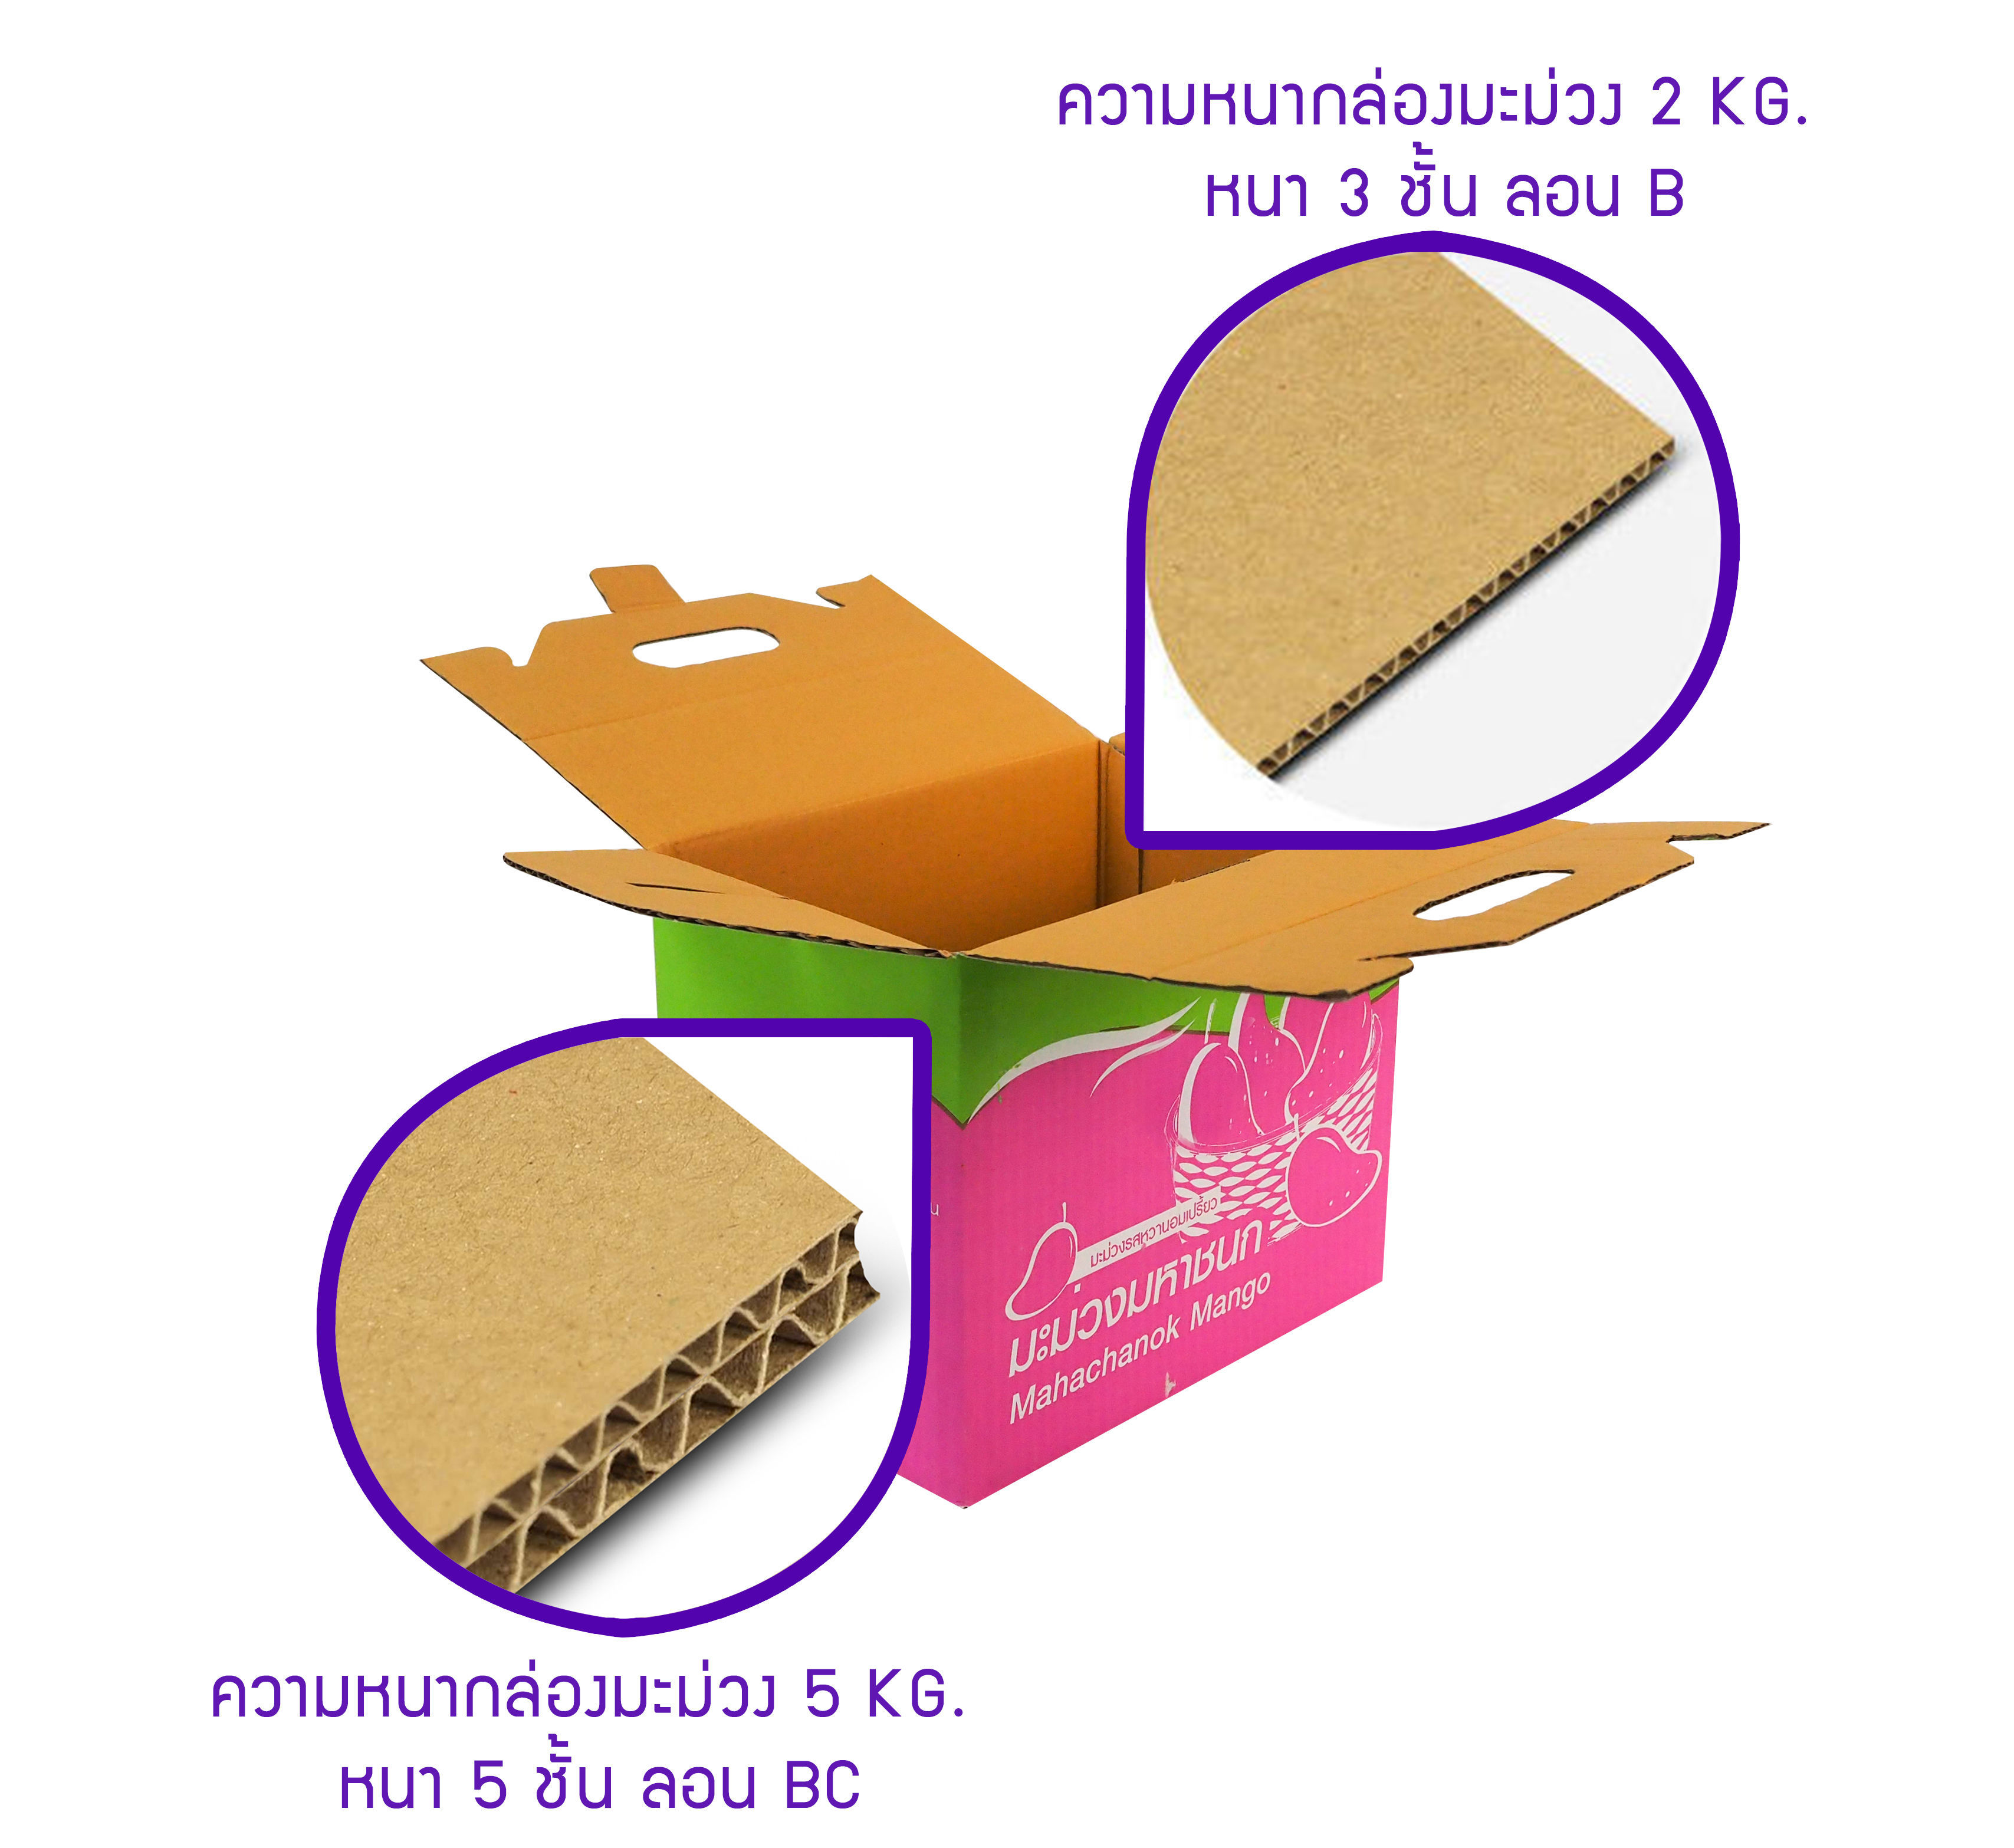 ความหนา 3 ชั้น ลอน B (กล่องแบบ 2 Kg.)ความหนา 5 ชั้น ลอน BC (กล่องแบบ 5 Kg.) ความหนากล่องจะต่างกันขึ้นอยู่กับน้ำหนักที่บรรจุในกล่อง